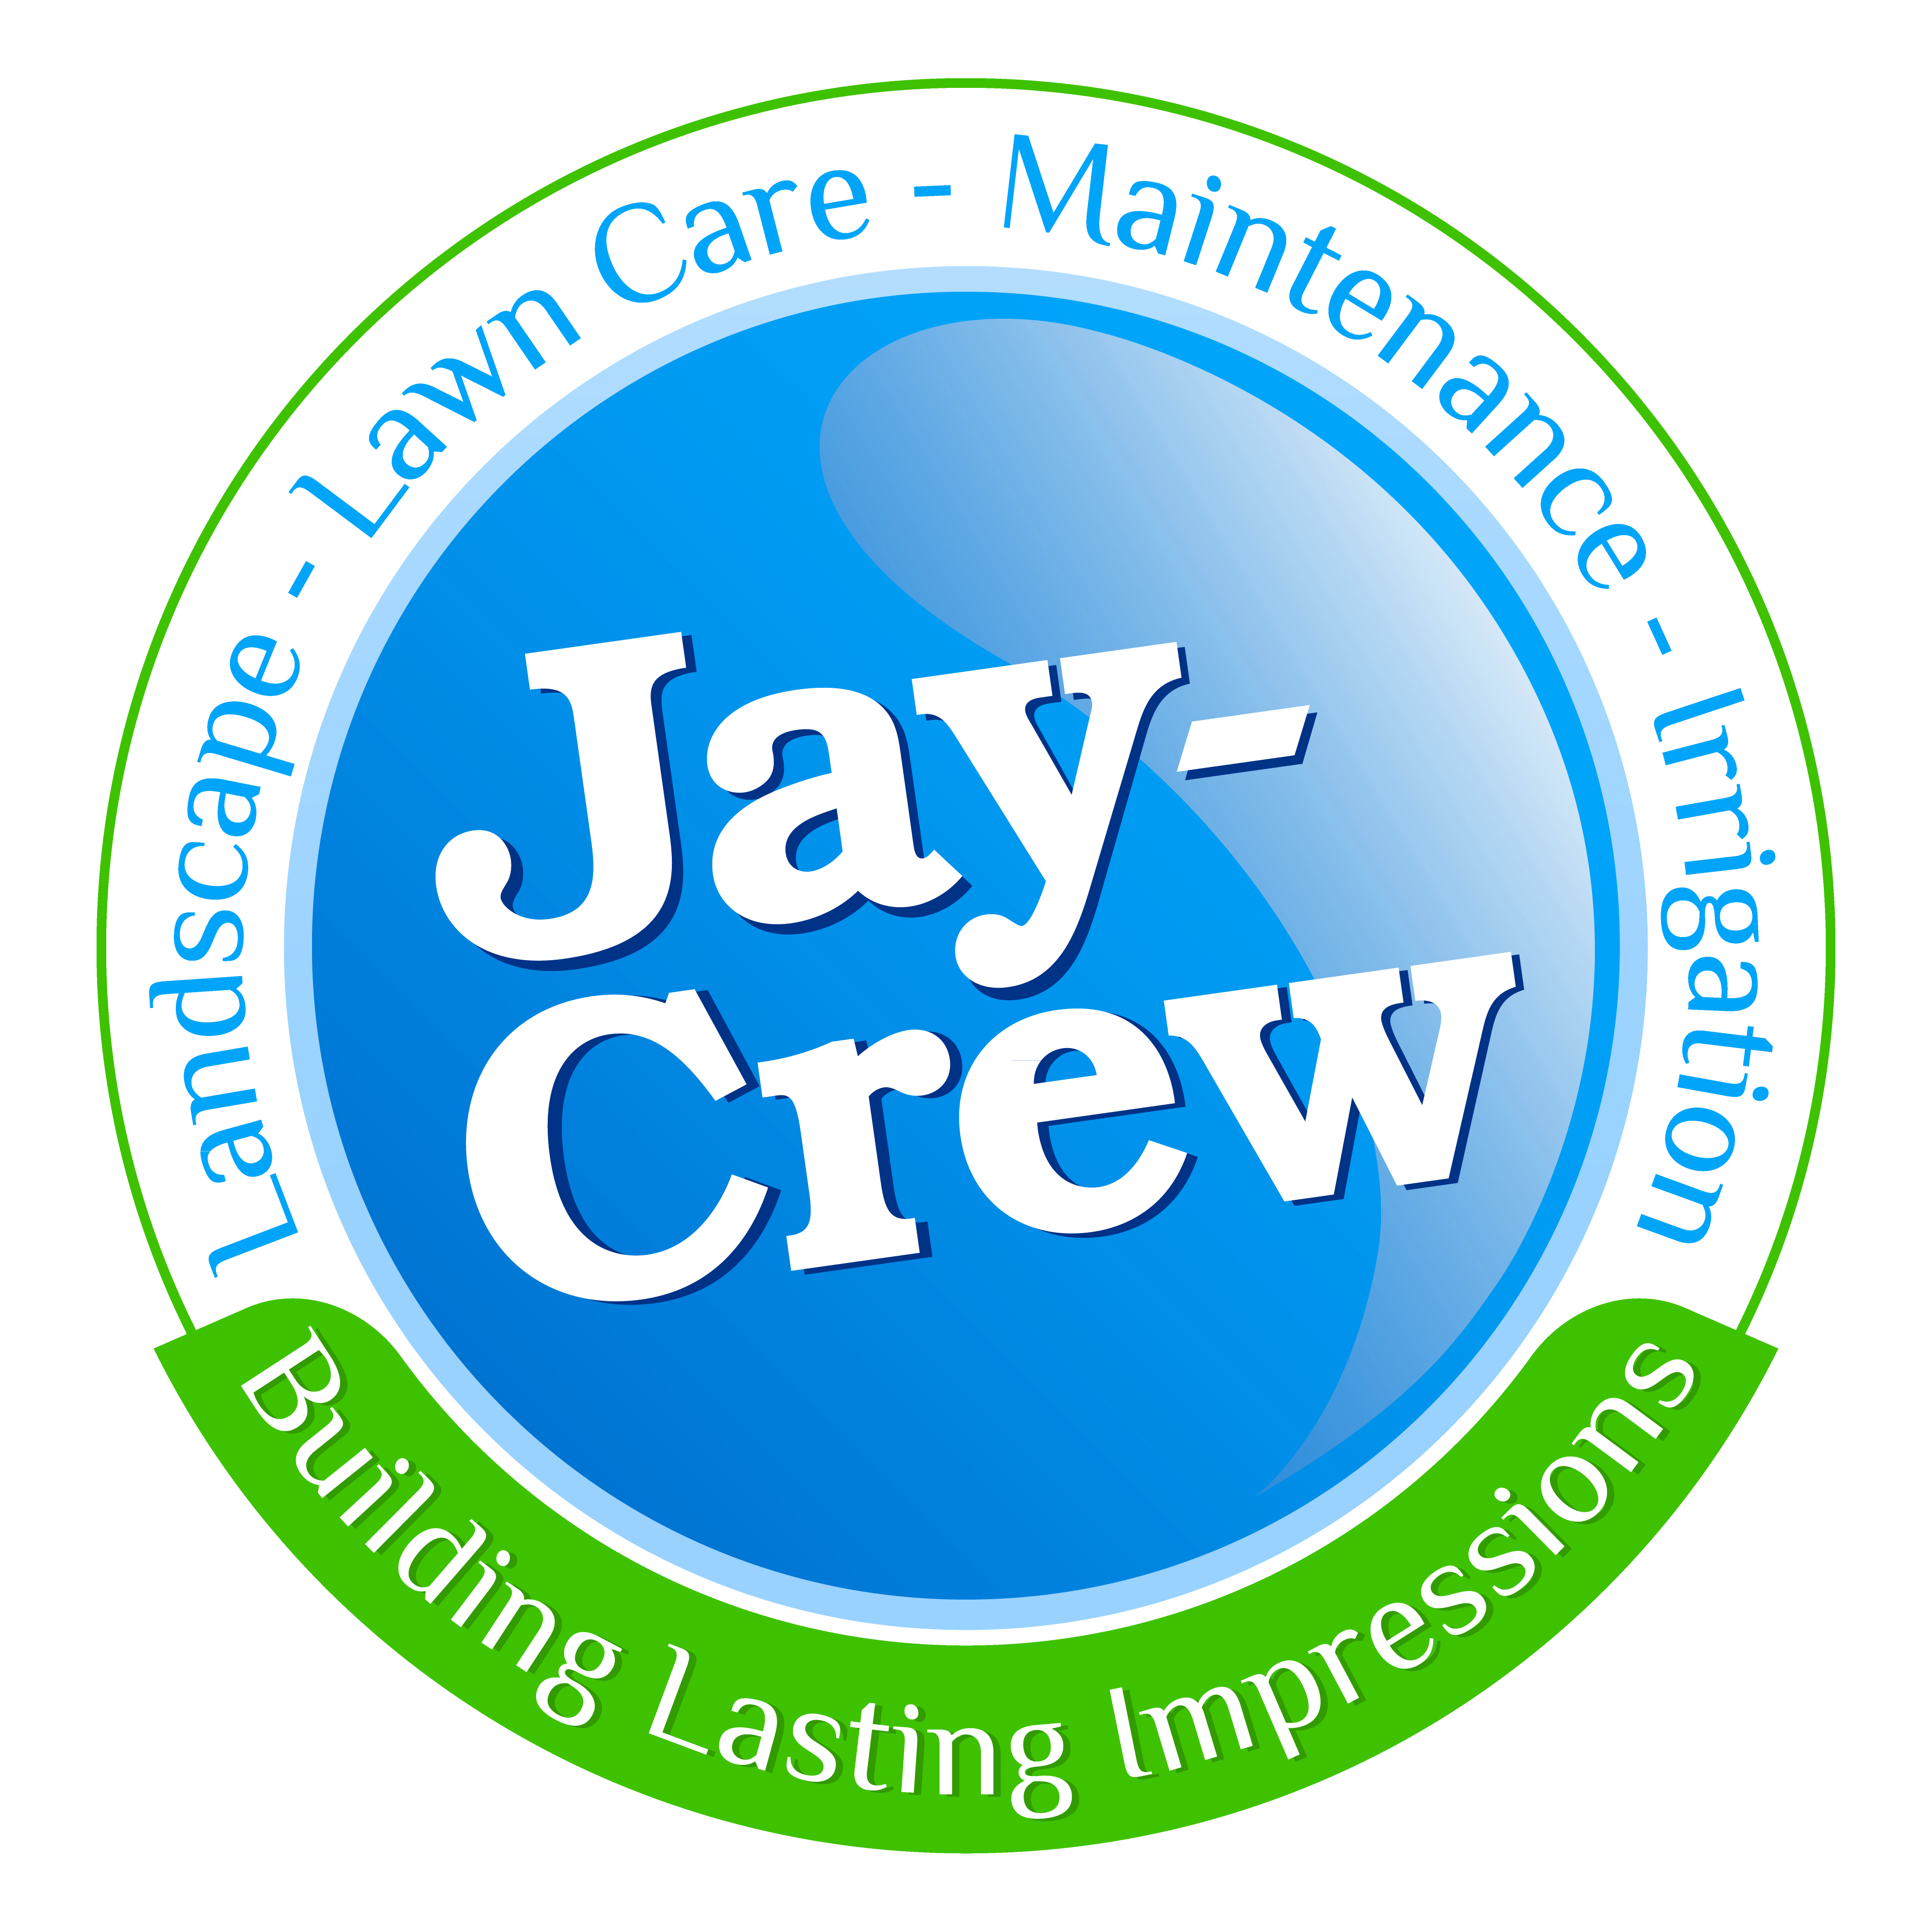 Jay-Crew